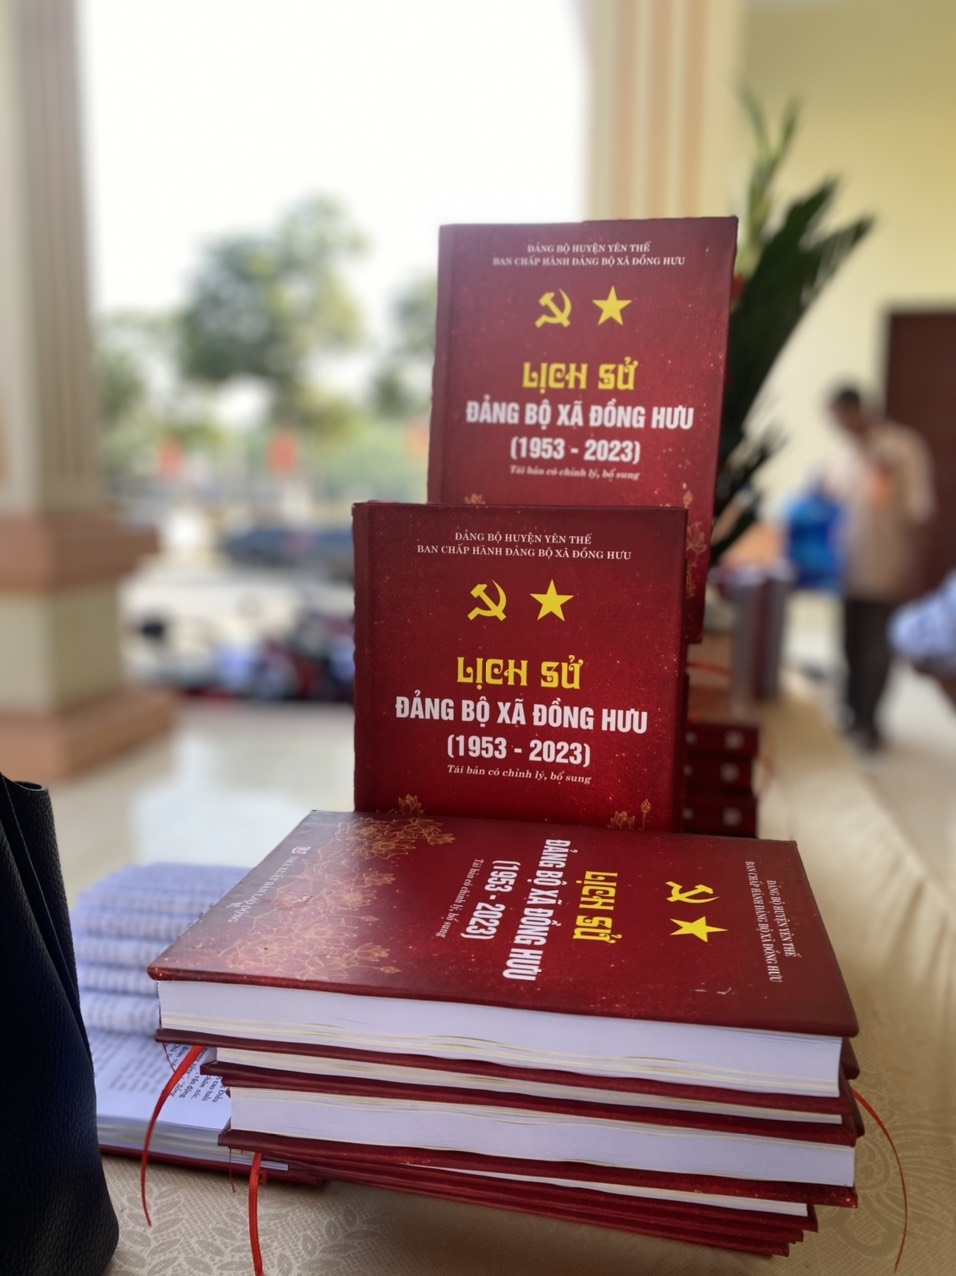 Bắc Giang: Xã Đồng Hưu tổ chức Lễ kỷ niệm 70 năm ngày thành lập và ra mắt cuốn Lịch sử Đảng bộ